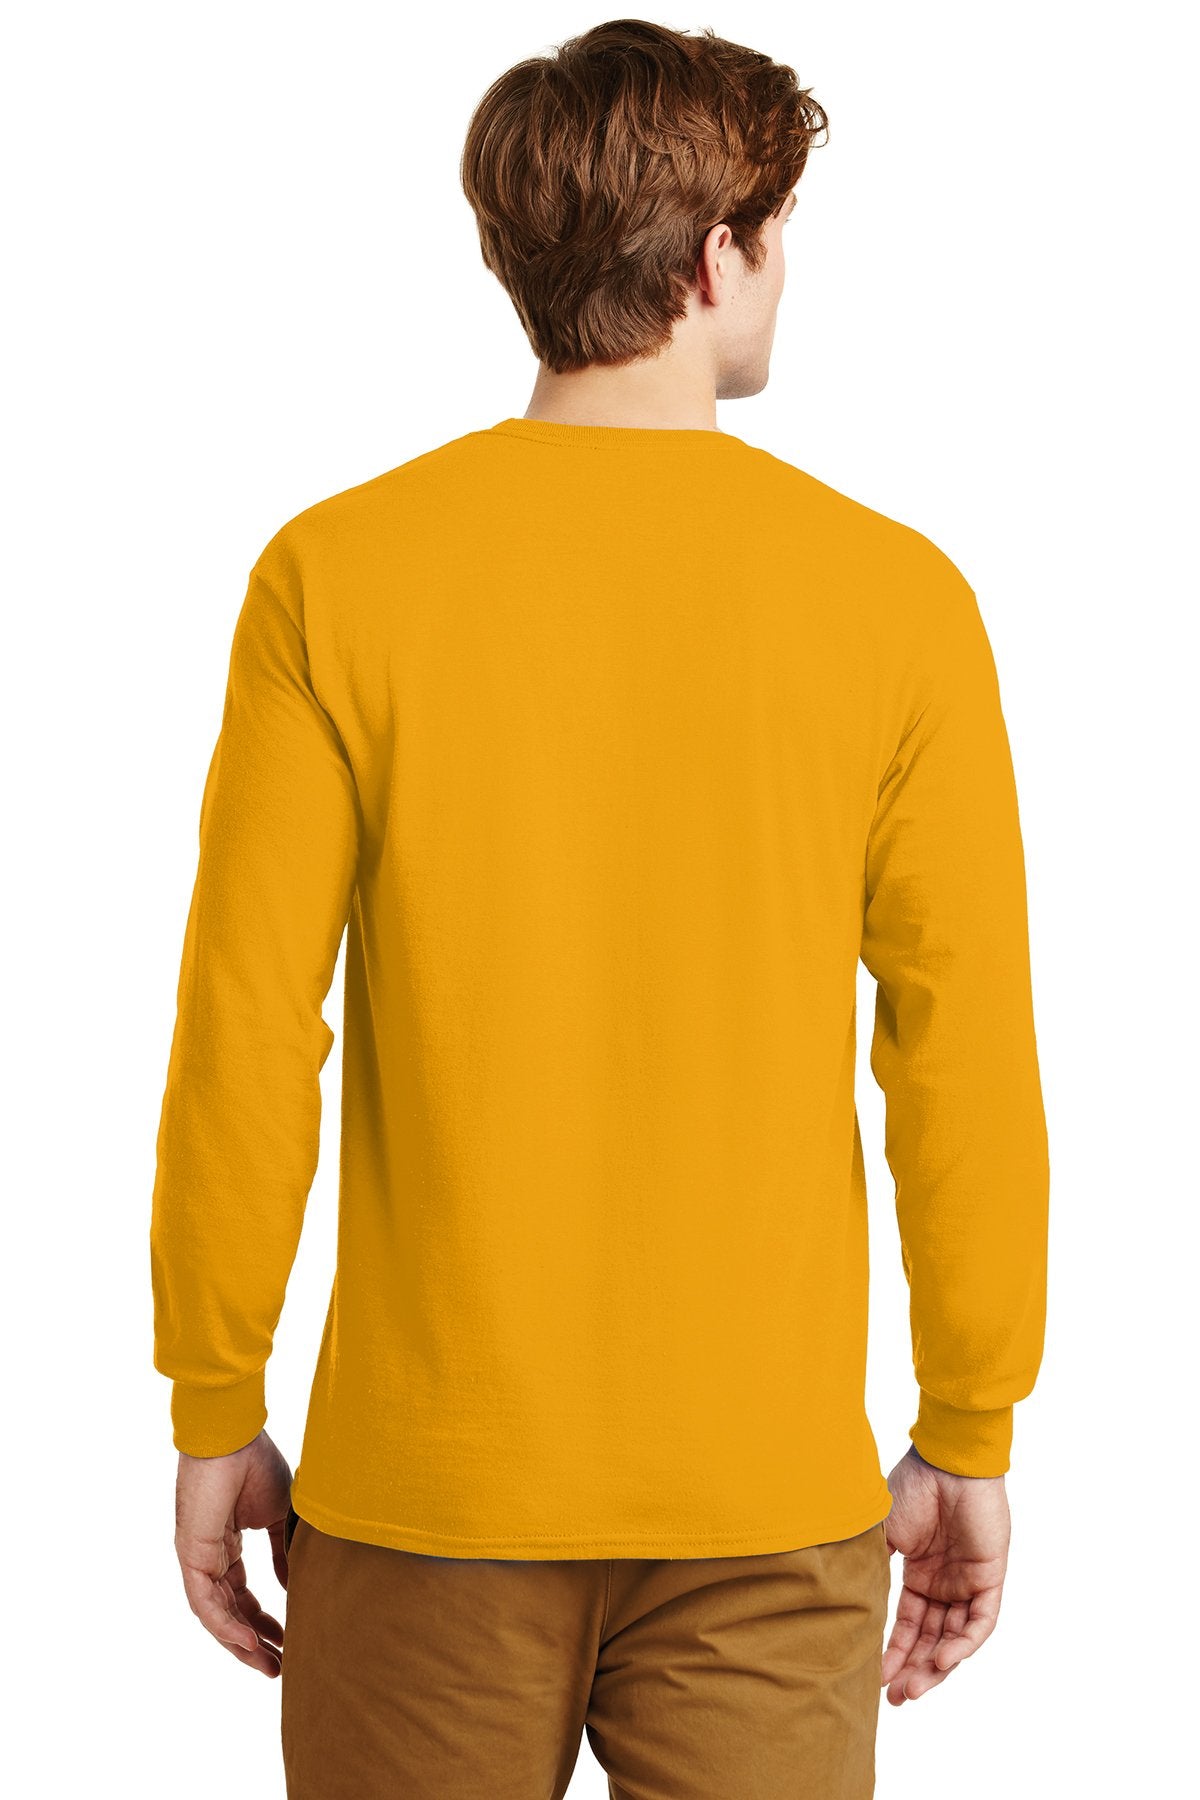 gildan ultra cotton long sleeve t shirt g2400 gold